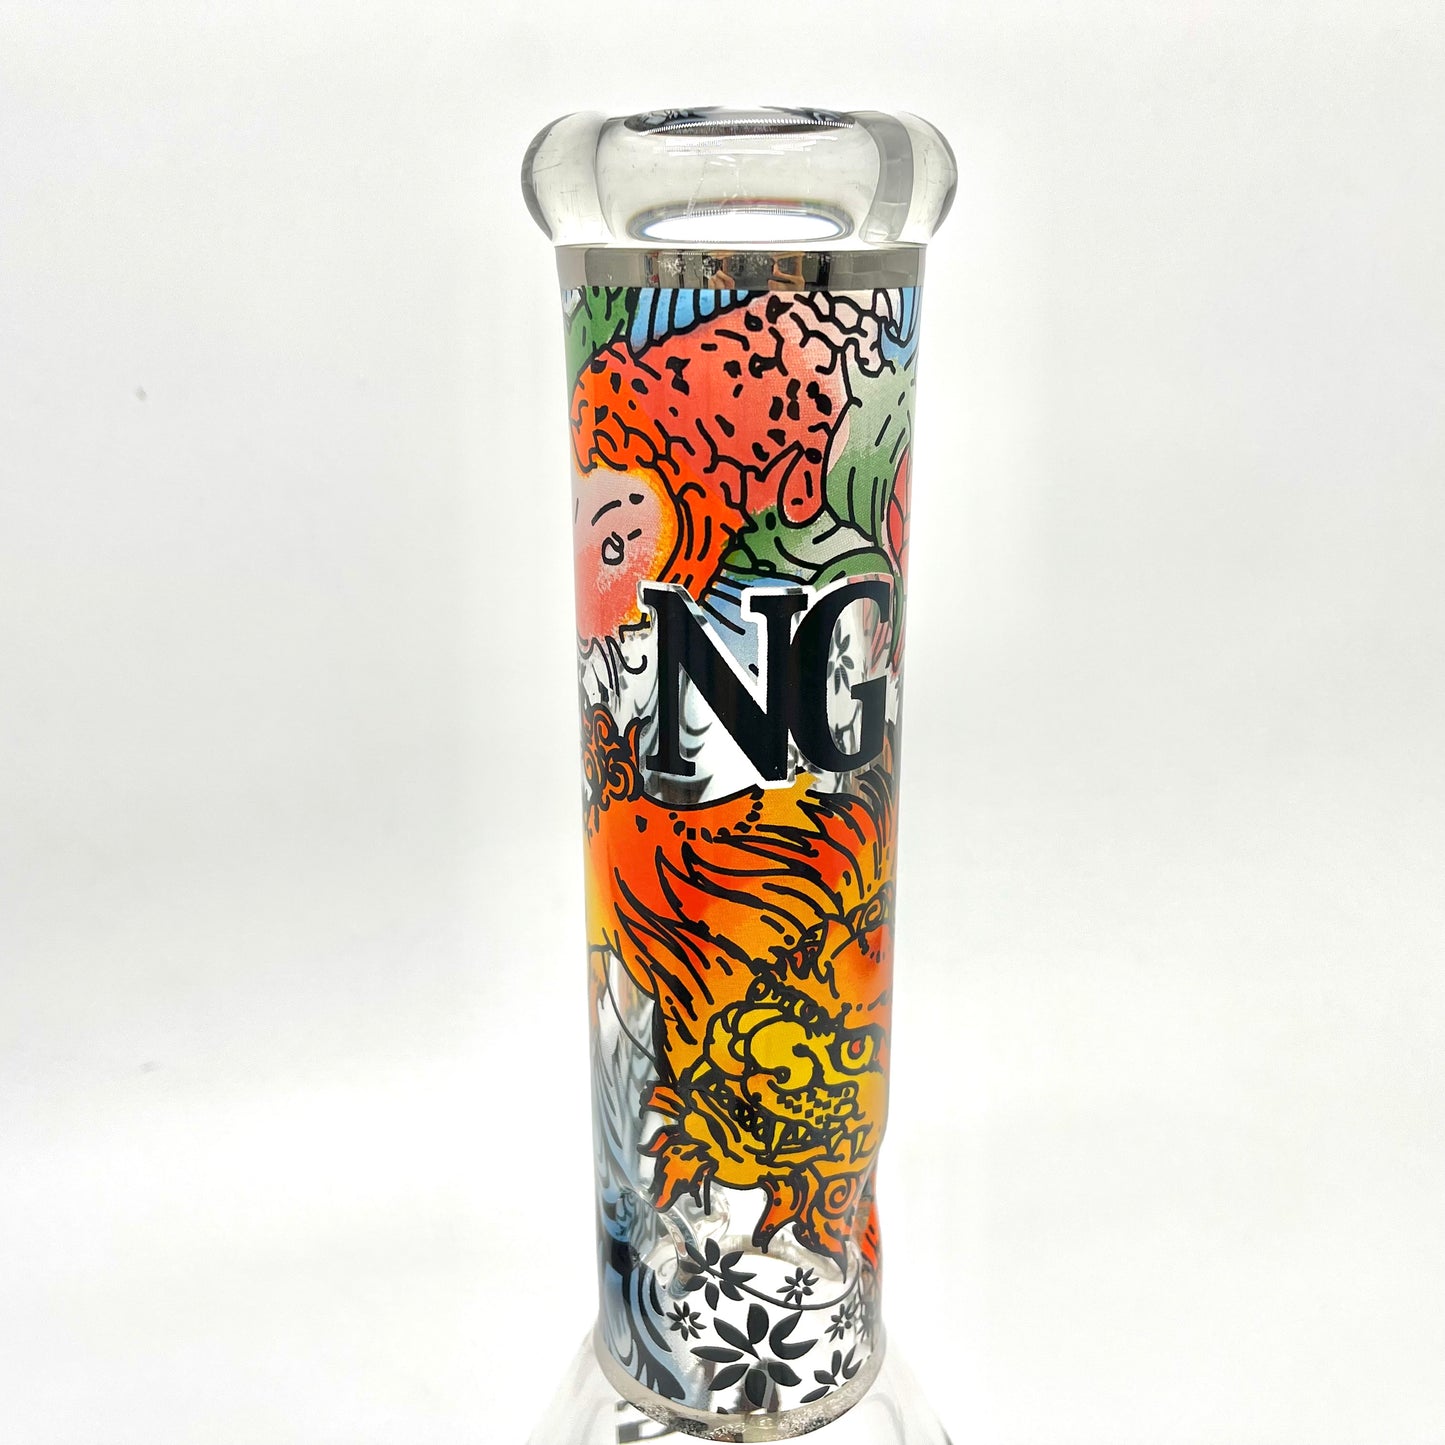 NG Glass Bongs Beaker - 33cm